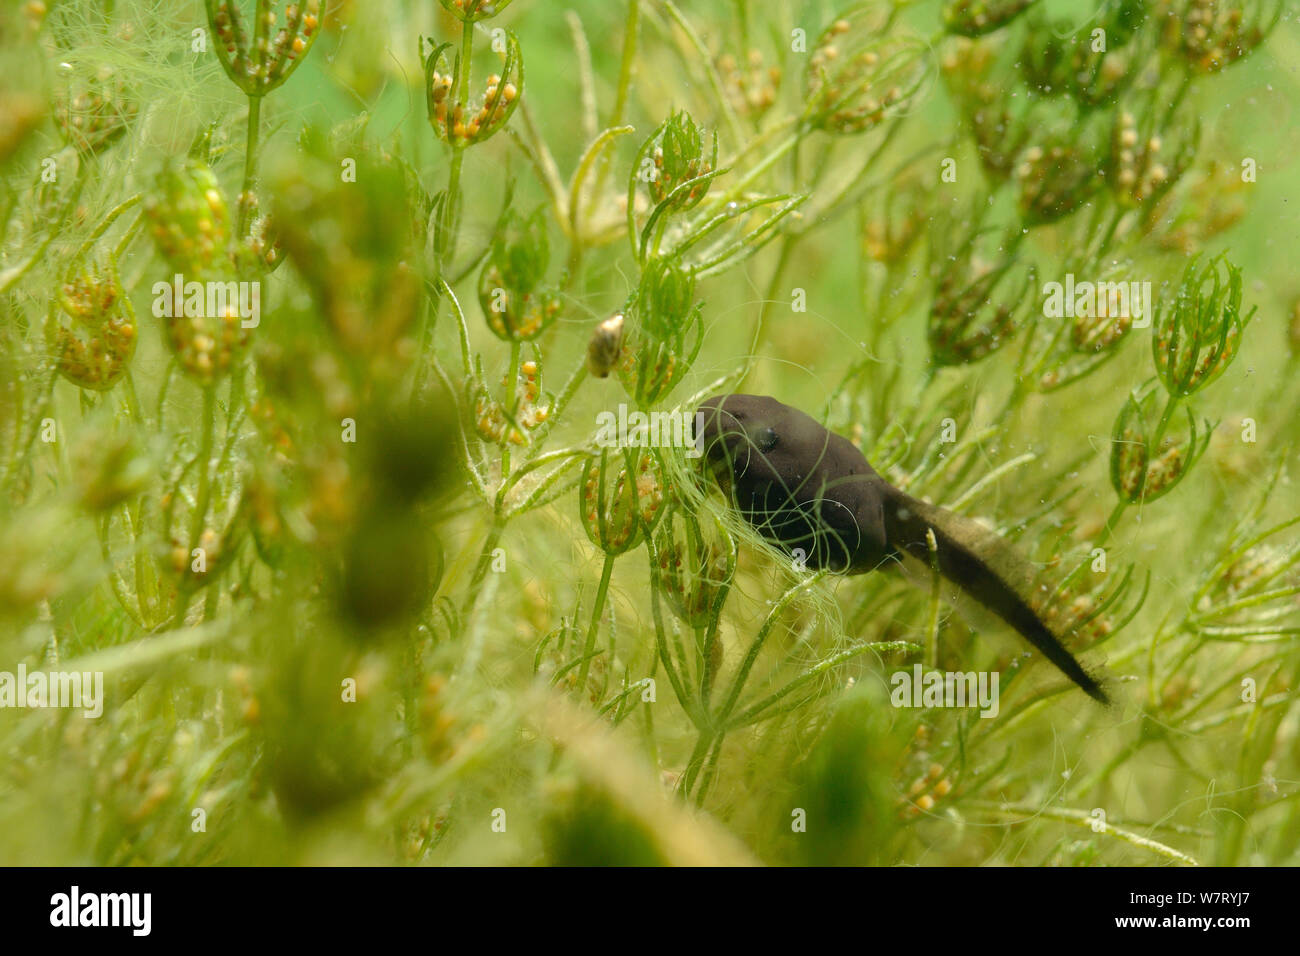 Semaine grenouille rousse (Rana temporaria têtards) stonewort délicate de pâturage (Chara virgata) algues dans un étang d'eau douce, Wiltshire, Royaume-Uni, juin. Banque D'Images